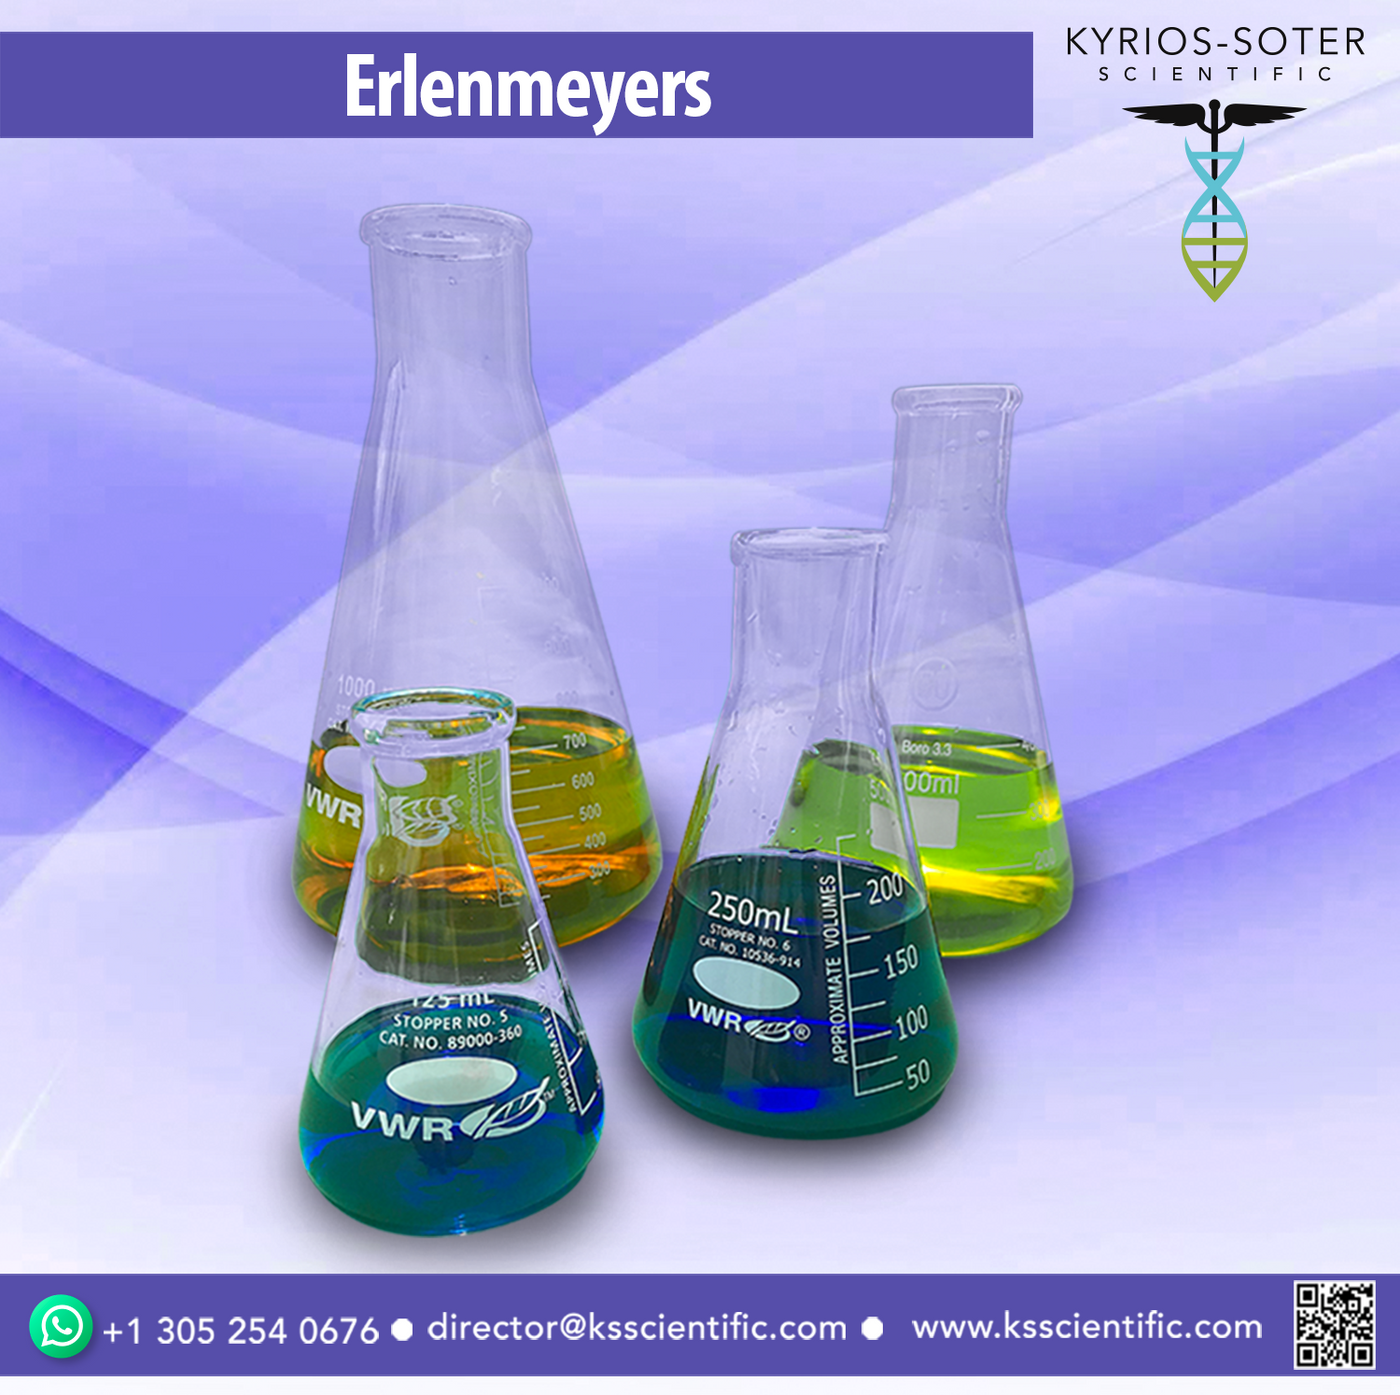 Erlenmeyer Flask, 500 mL